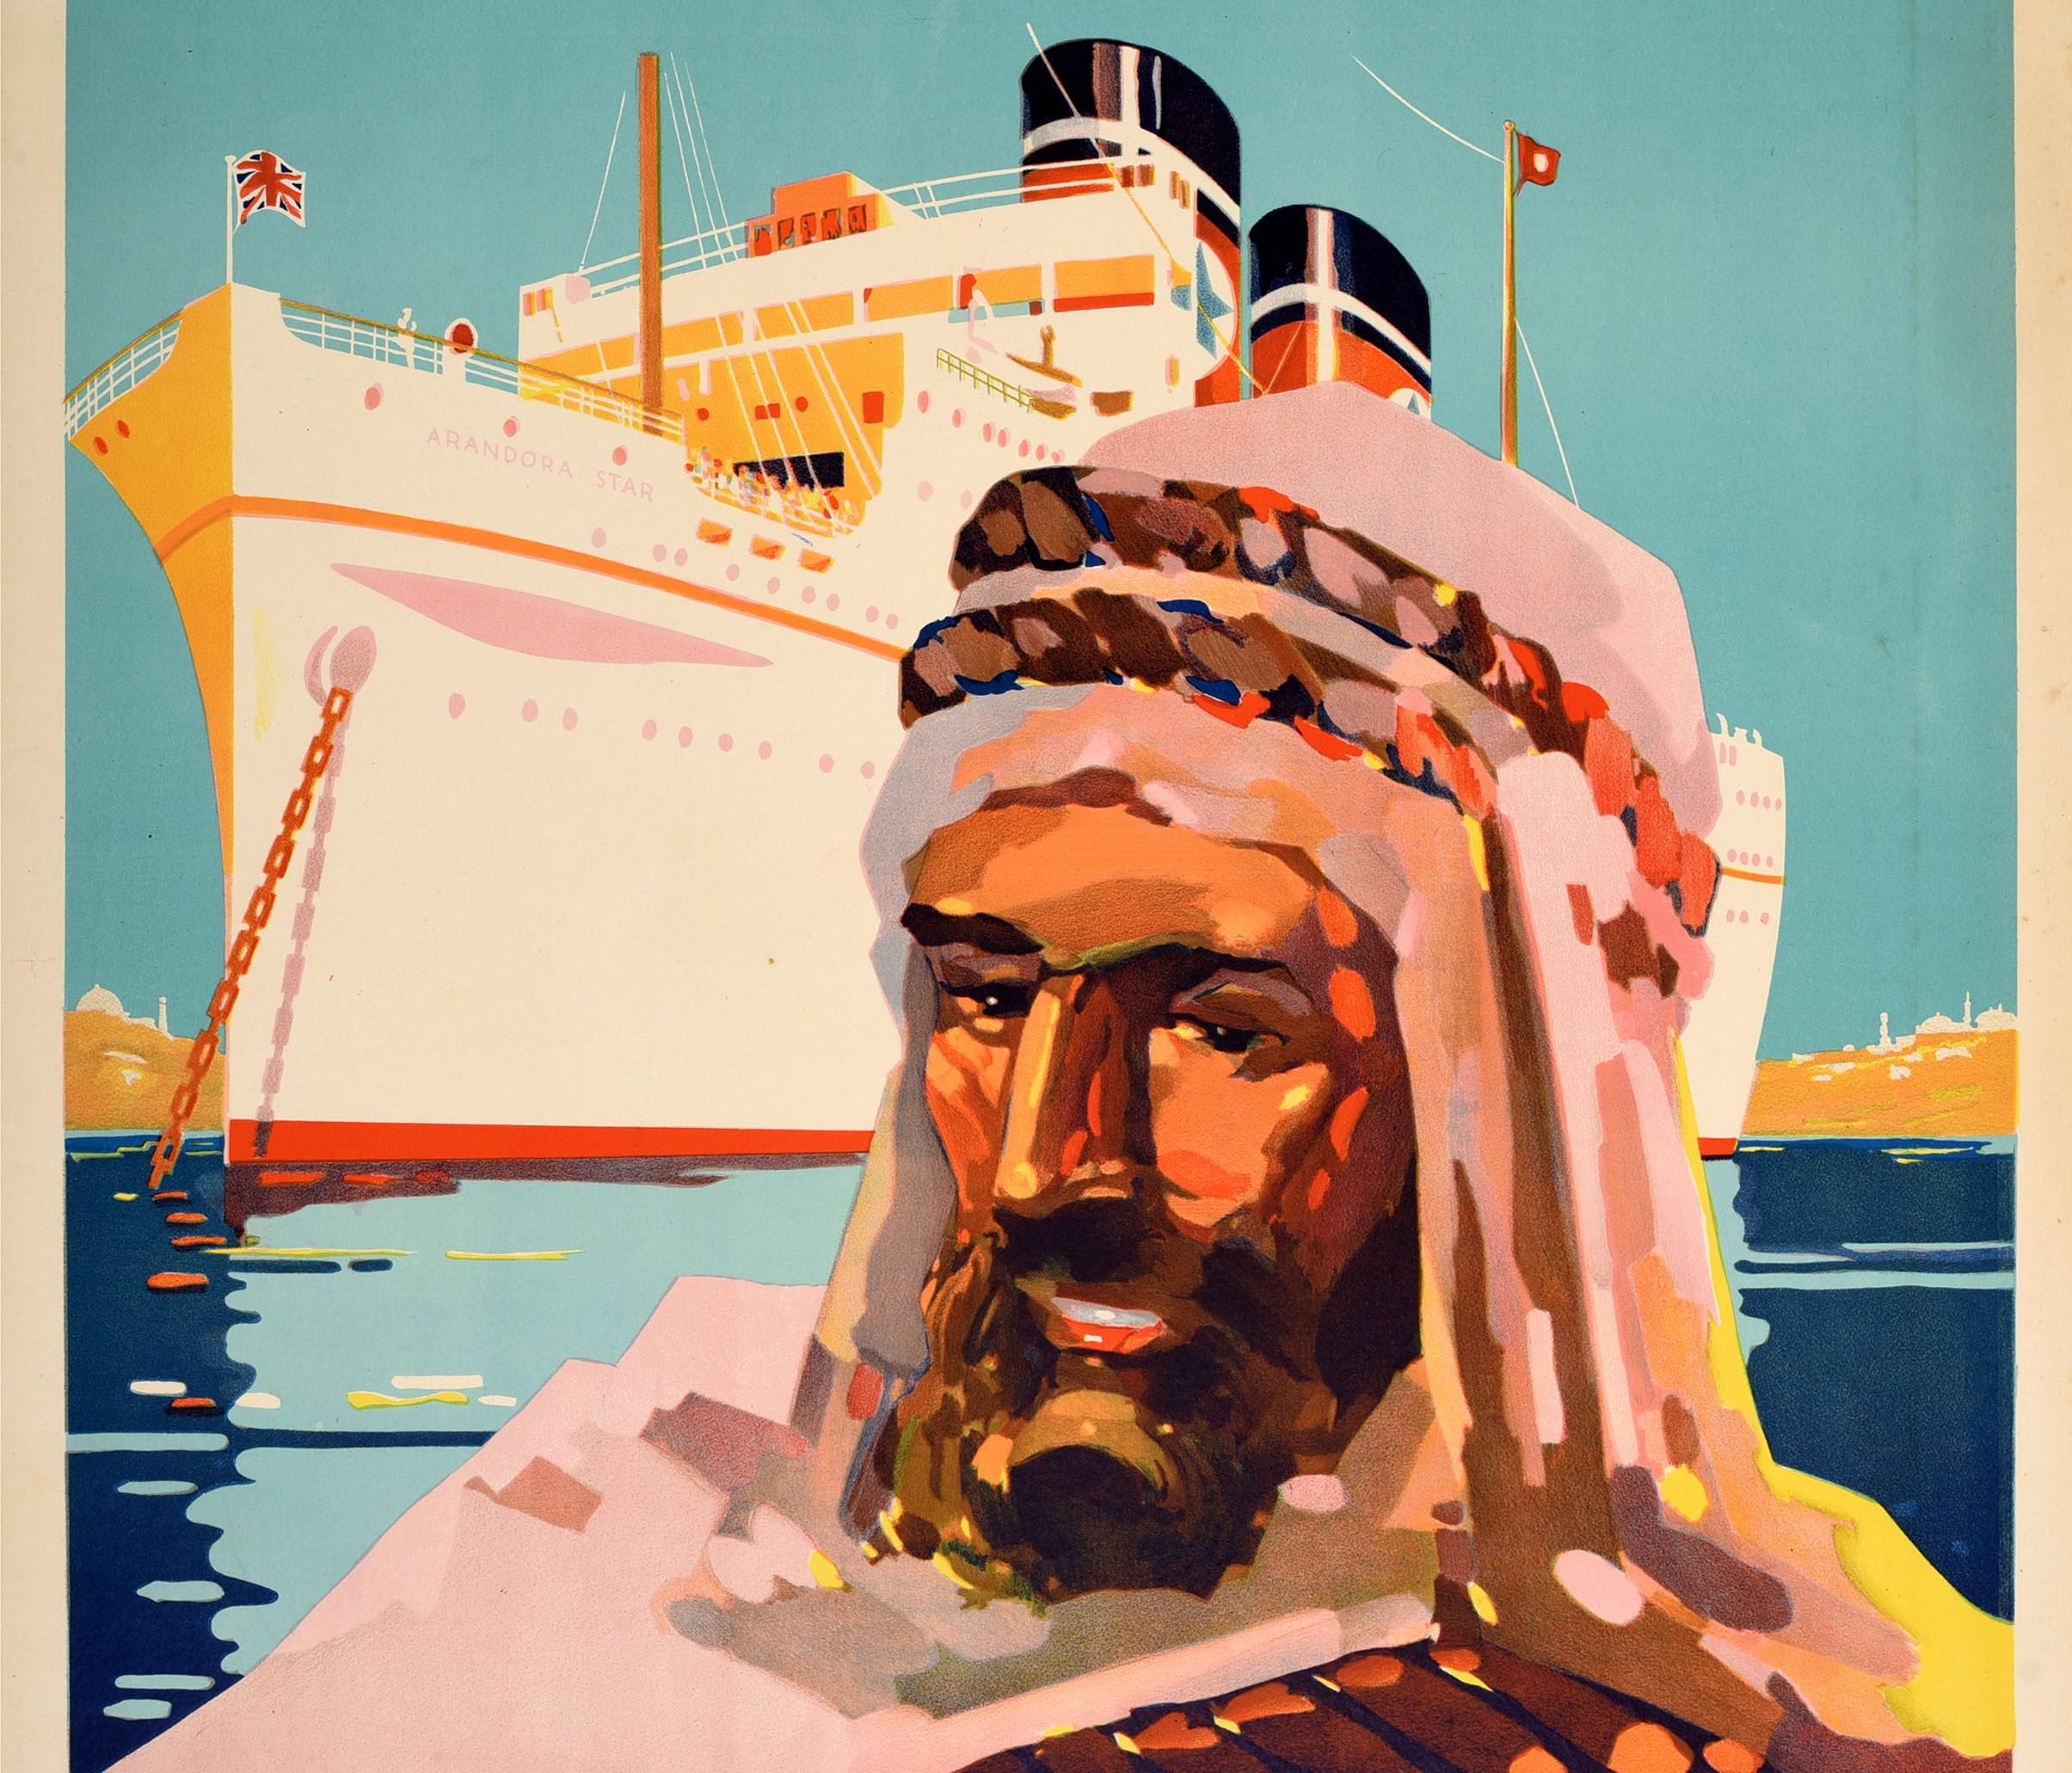 Original-Kreuzfahrt-Reiseplakat für Blue Star Line Mittelmeer-Kreuzfahrten auf der Queen of Cruising Liners Arandora Star mit einem farbenfrohen Bild eines Mannes vor einem Dampfschiff, das sich auf dem blauen Meer spiegelt, mit sichtbaren Gebäuden